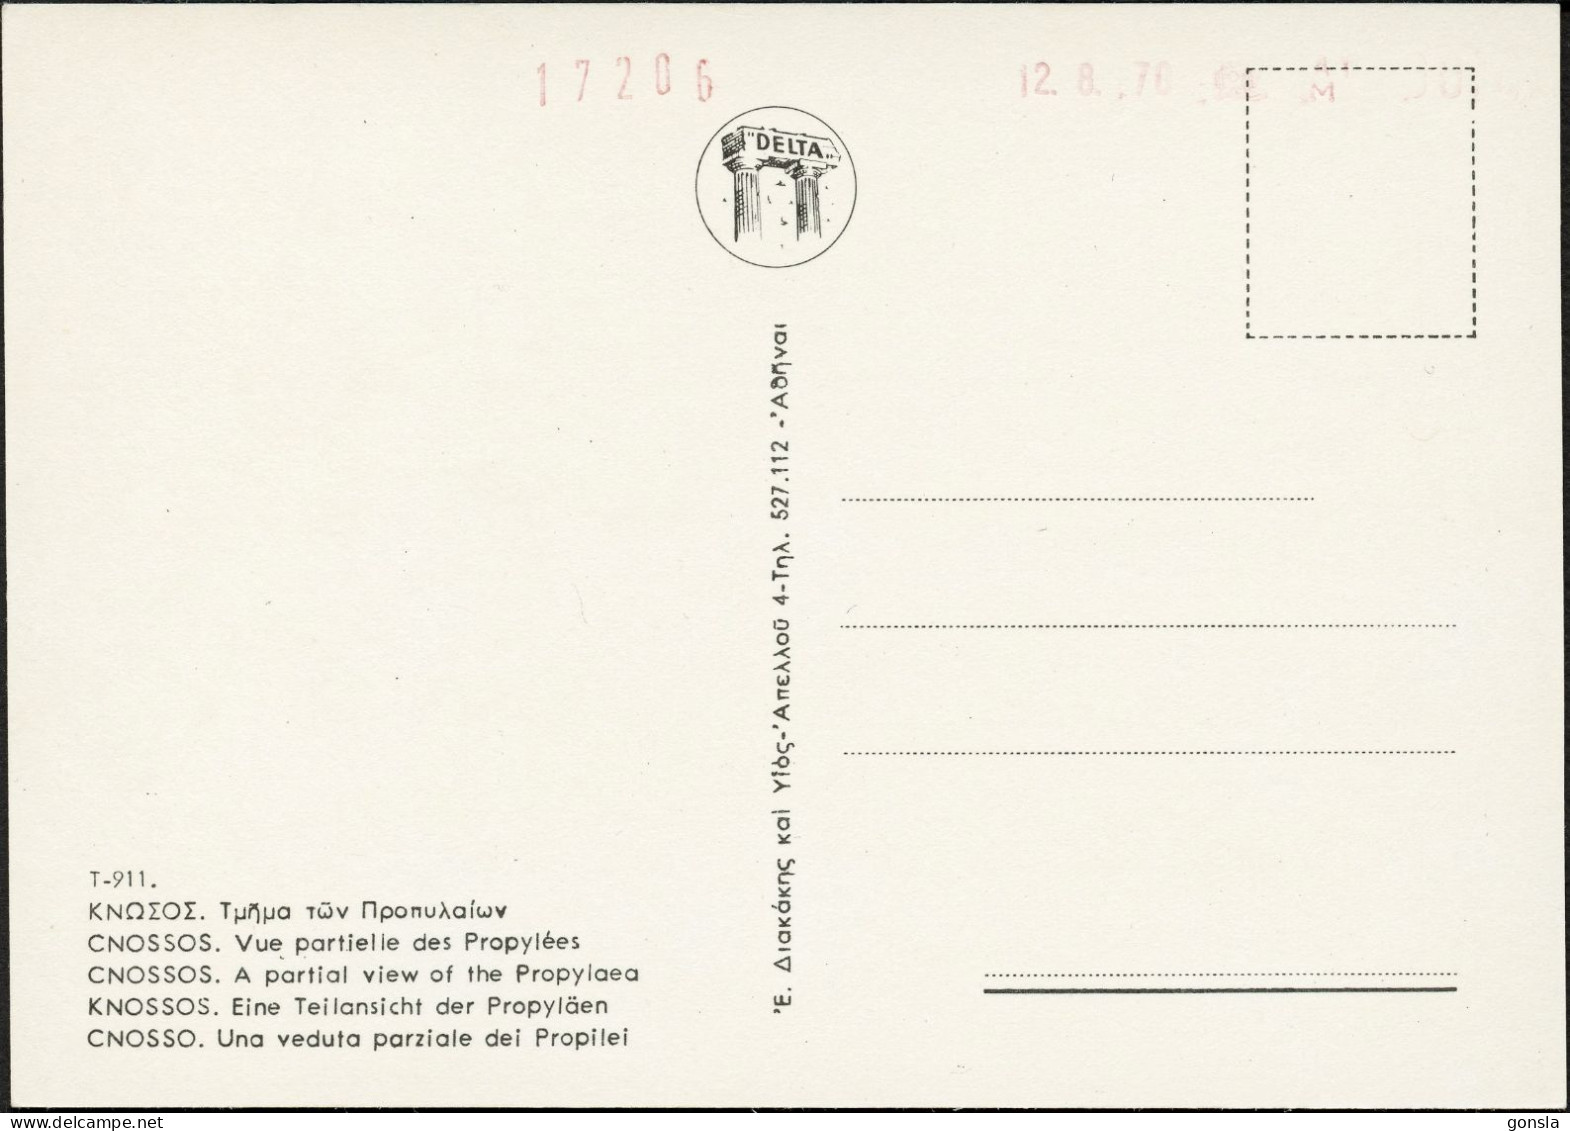 CNOSSOS 1970 "Crête" Lot de 4 cartes postales